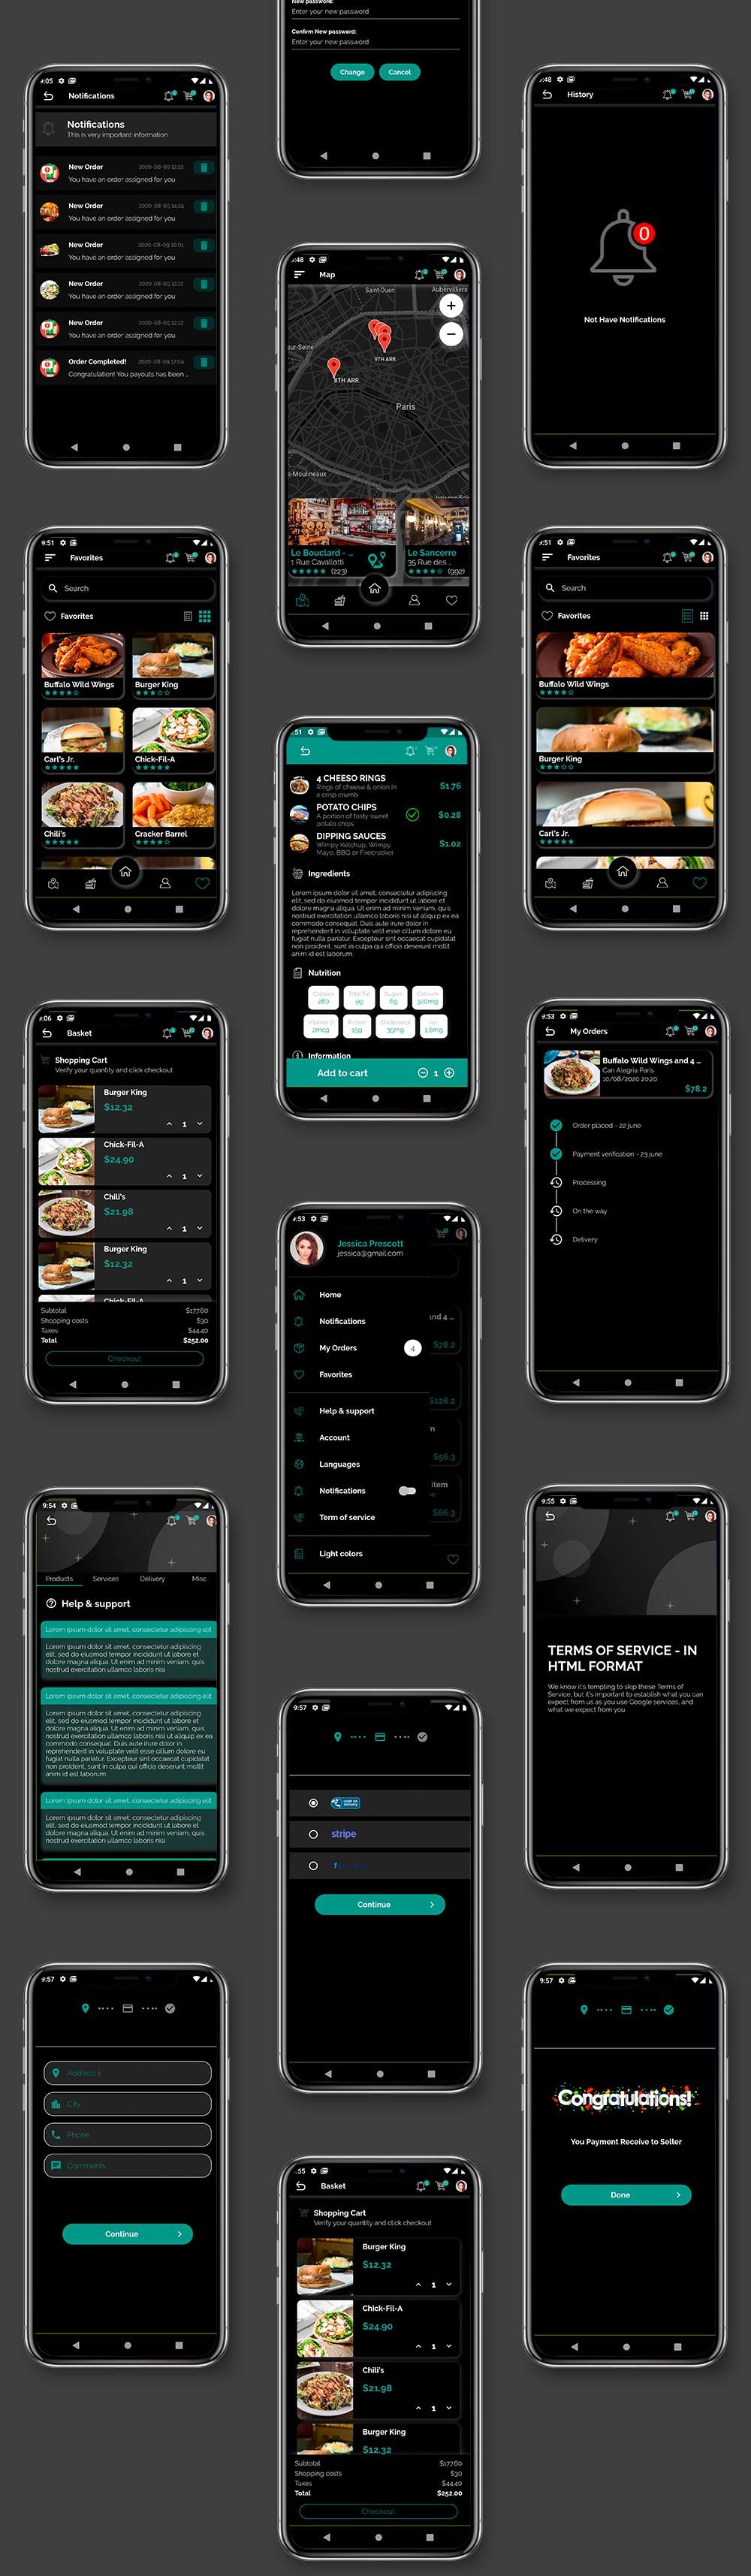 Food Delivery UI Kit in Flutter - 3 Apps - Customer App + Delivery App + Owner App - 8